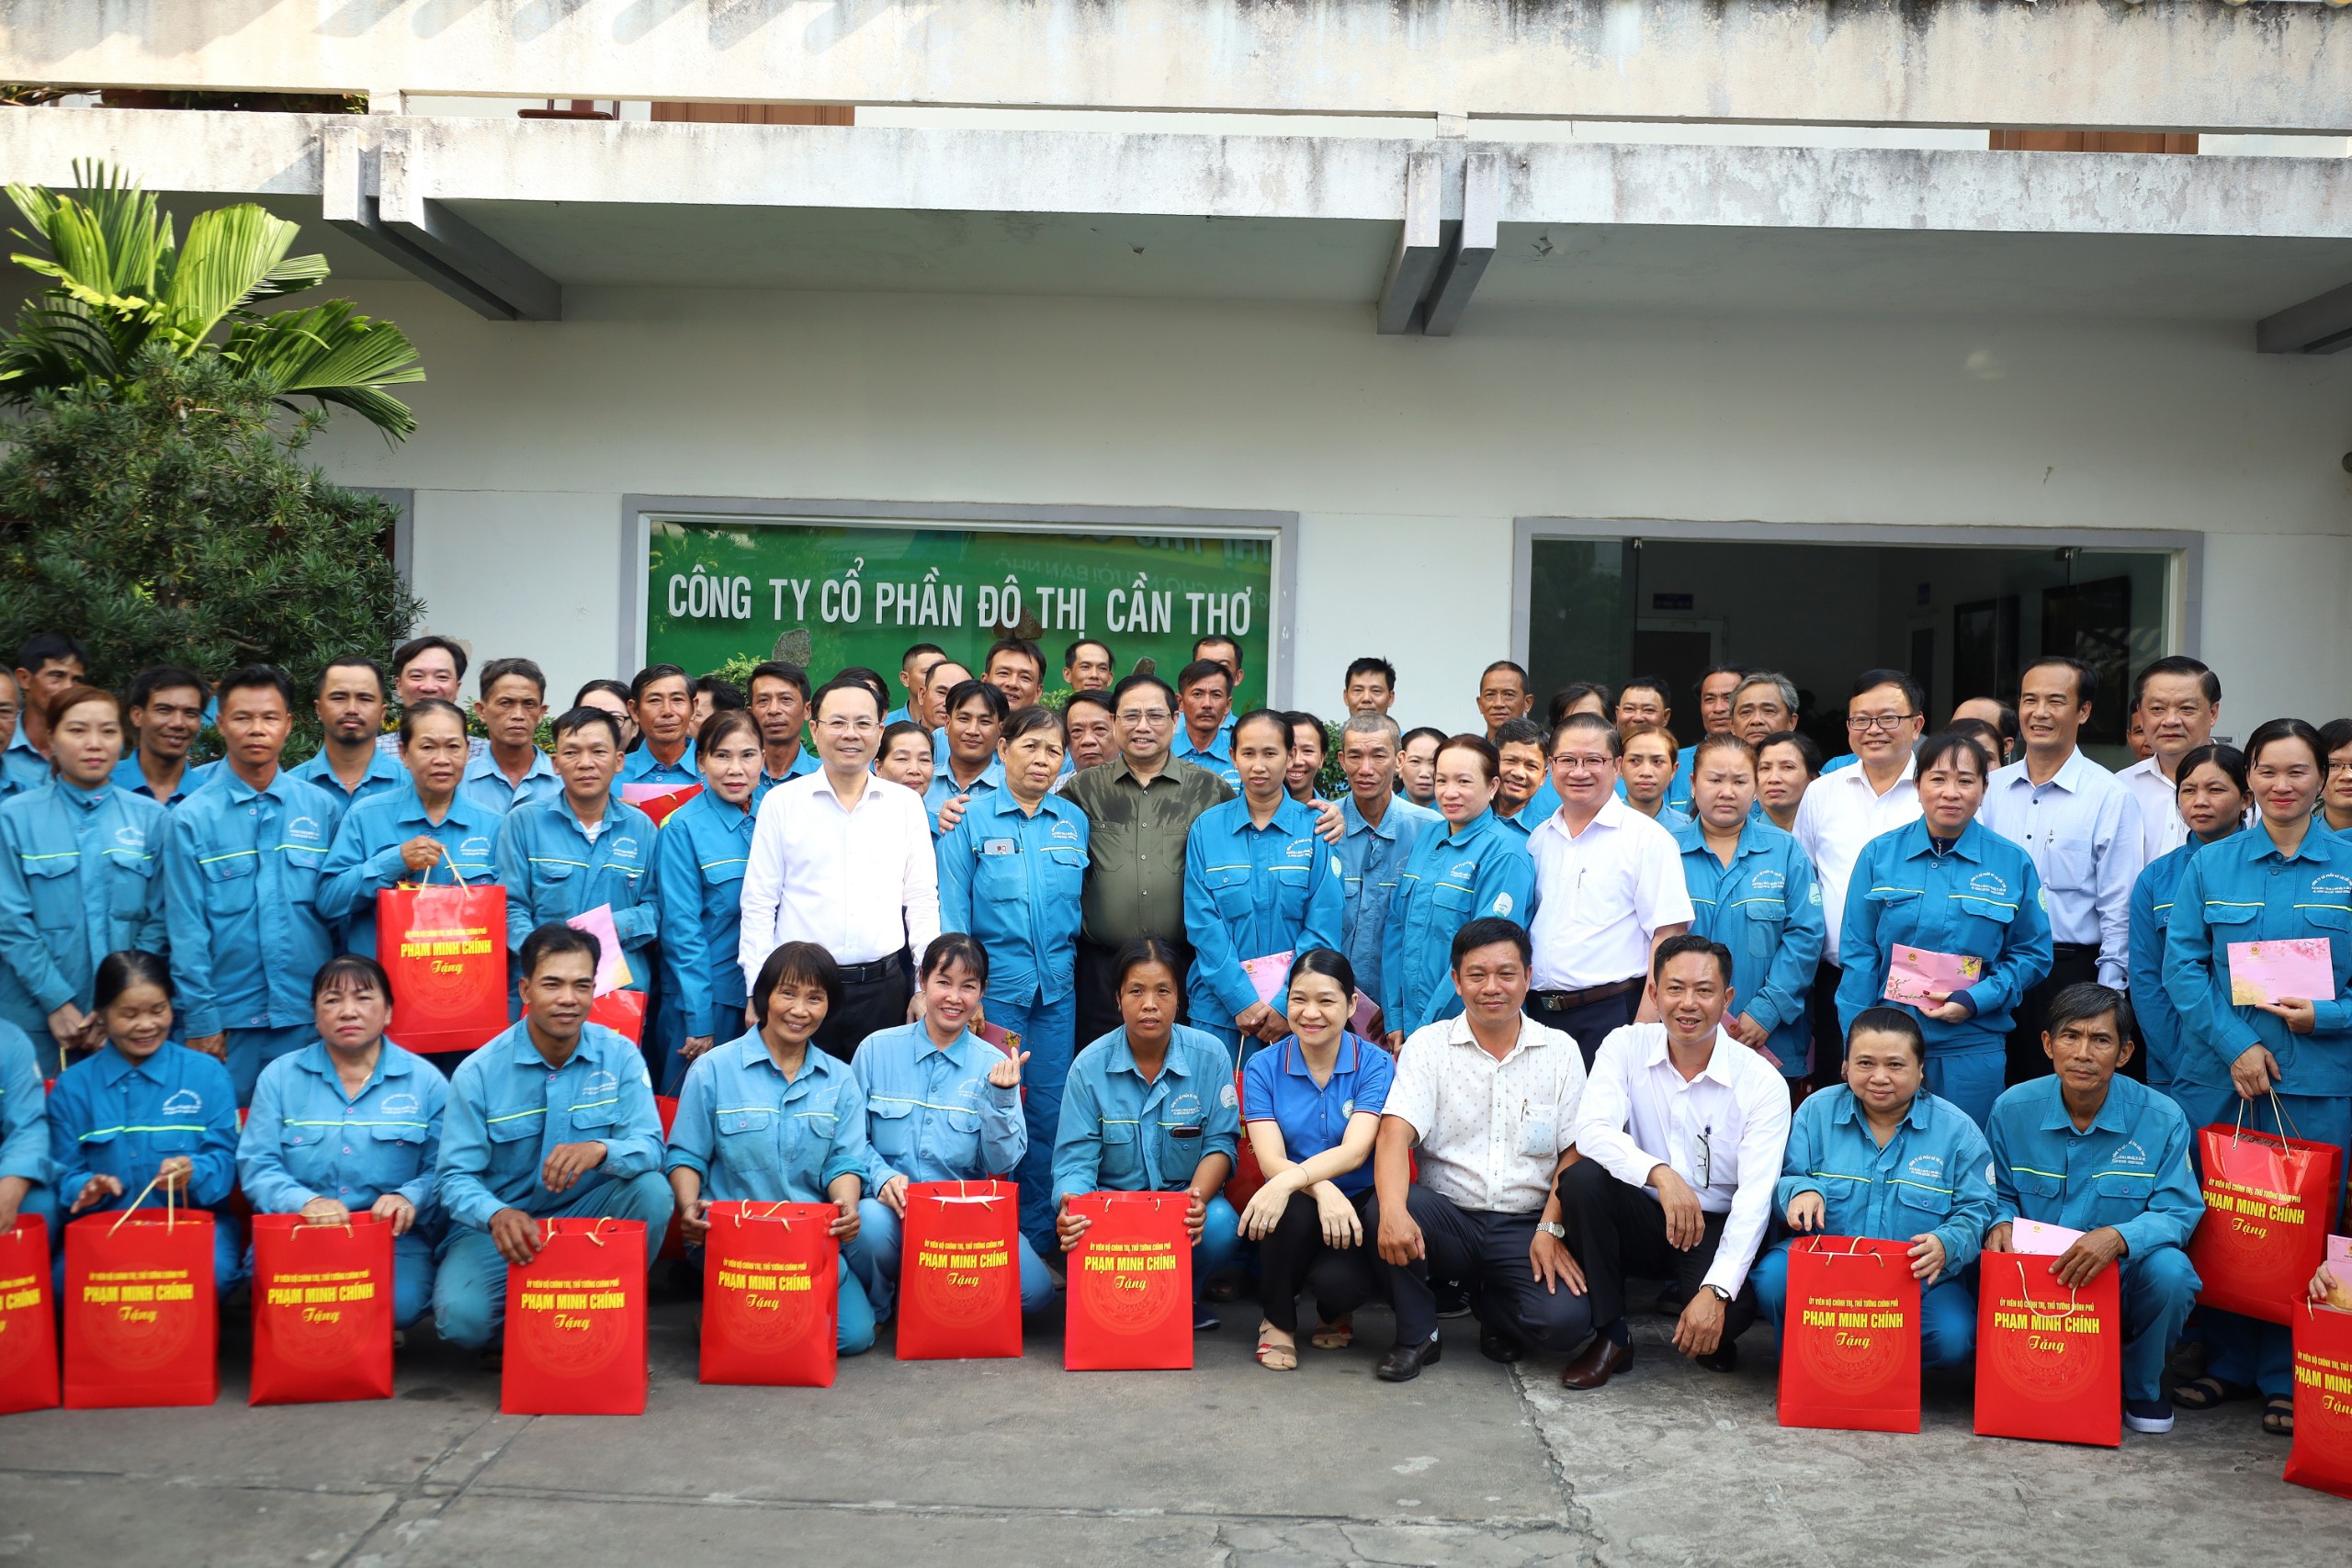 Thủ tướng Chính phủ Phạm Minh Chính và đoàn công tác chụp hình lưu niệm cùng lãnh đạo, công nhân Công ty cổ phần Đô thị Cần Thơ.